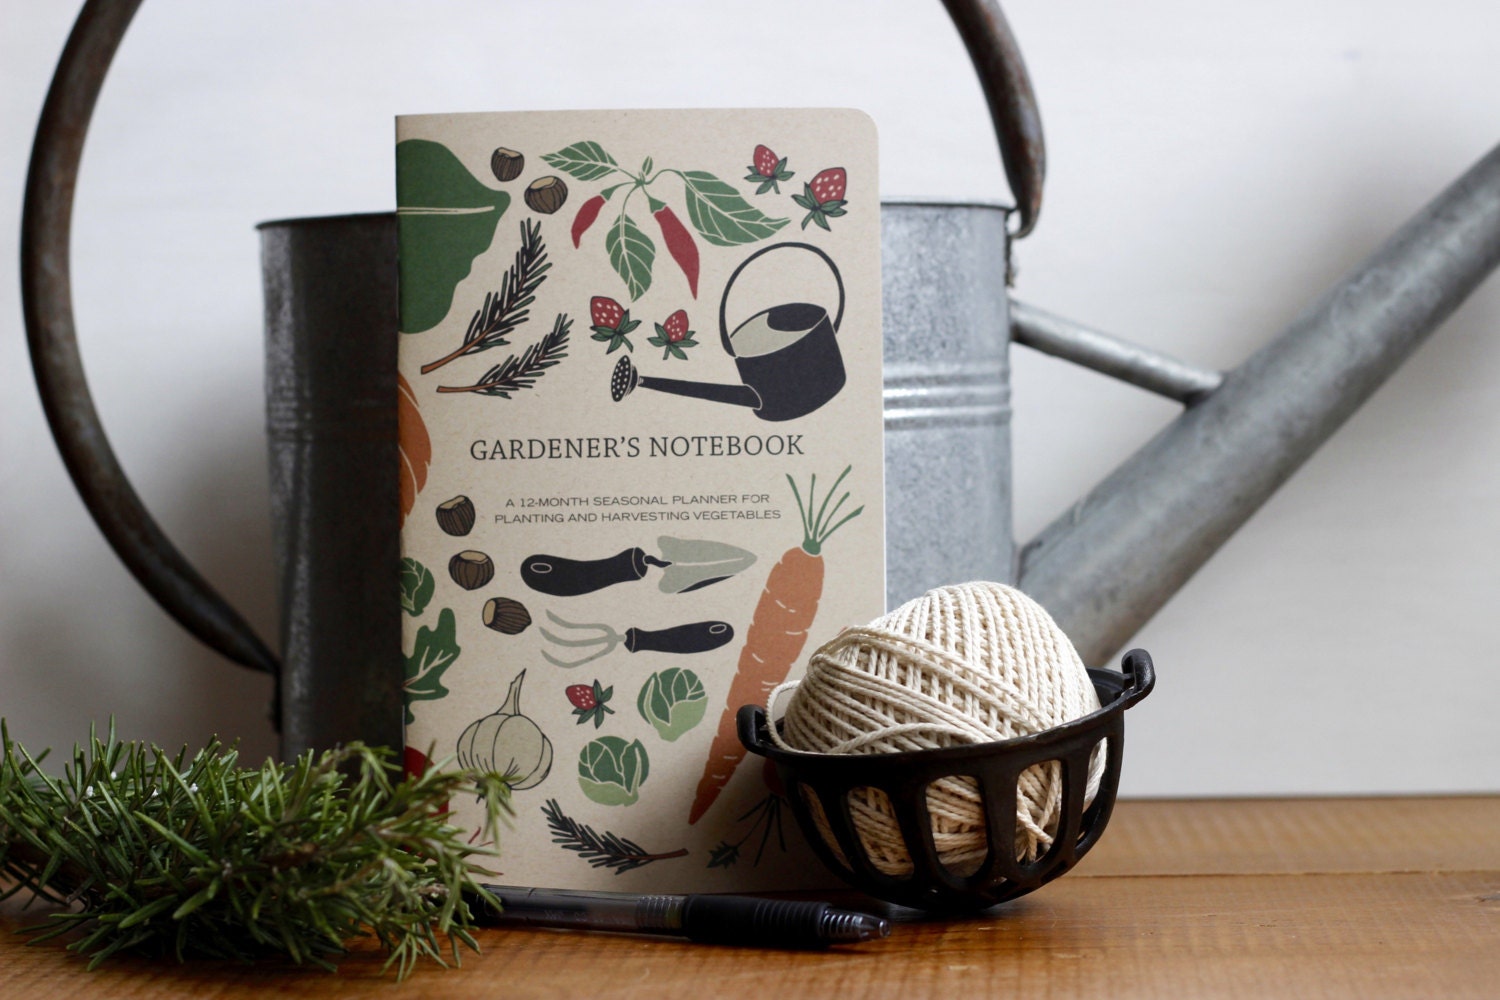 Gardener's Notebook, Harvest Journal, Gardener Gift, Vegetable Growing, Garden Planner, Planting Book, Gift for Her, Mother's Day, Farm